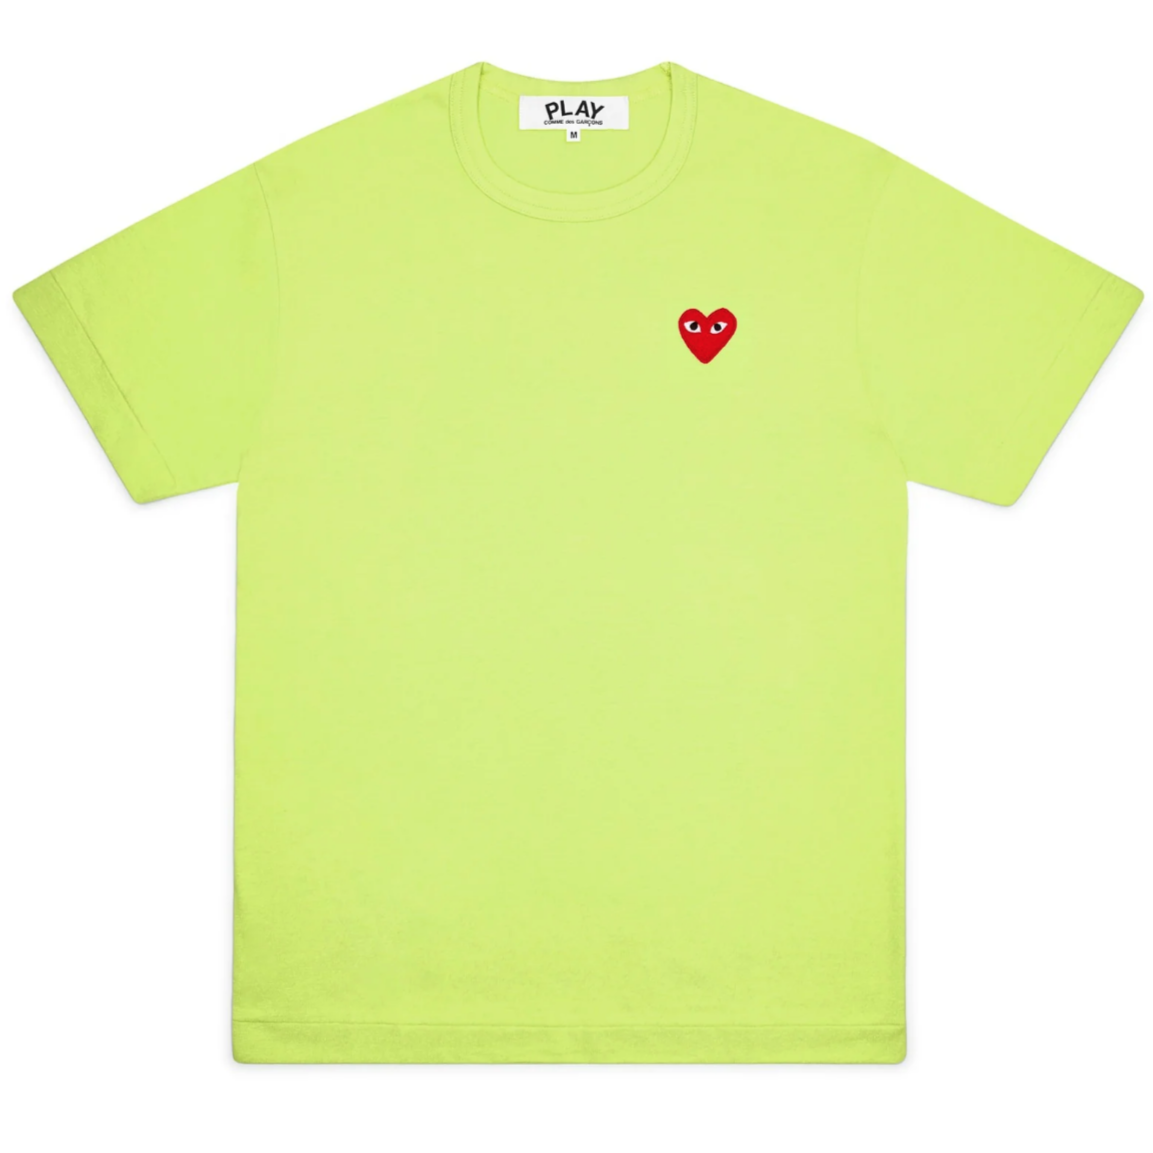 PLAY T-Shirt Damen neongrün Herz rot